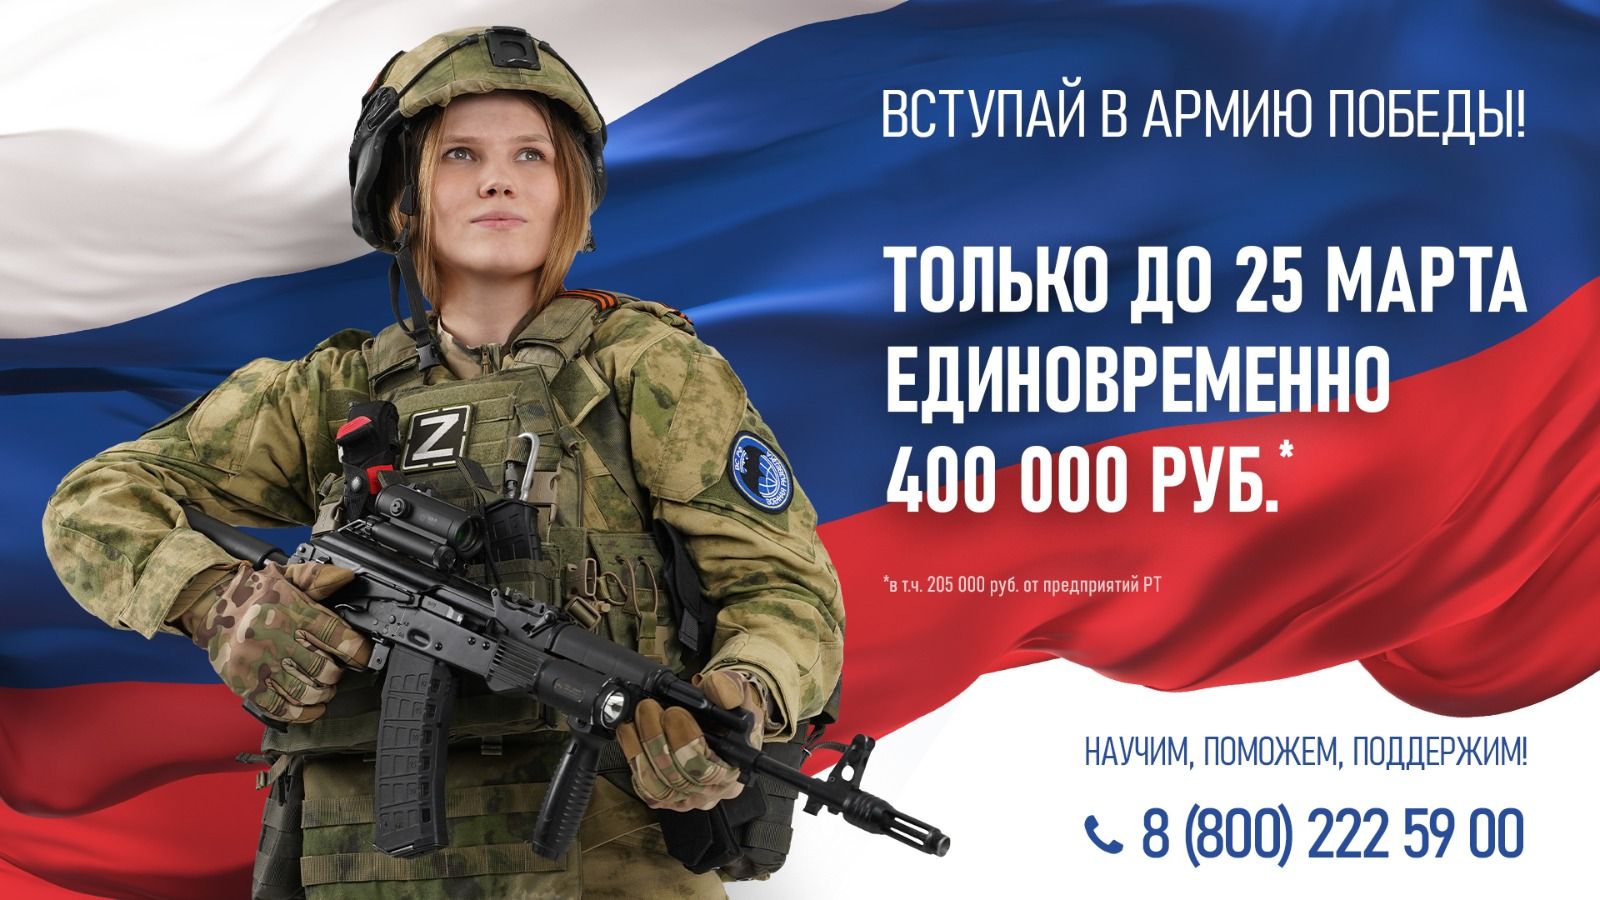 Только до 25 марта 400 000 рублей единовременно